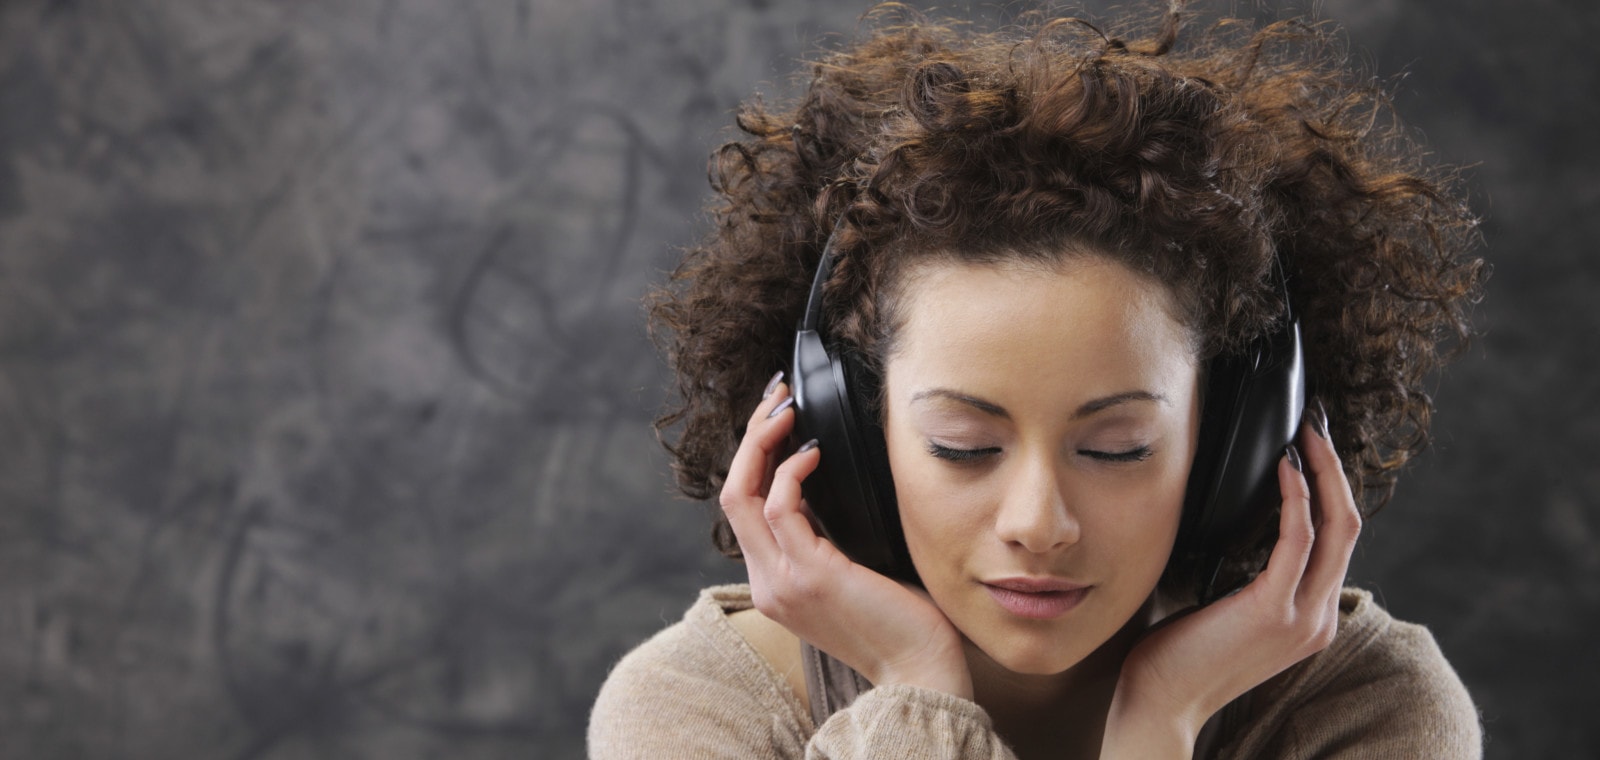 Young woman enjoying audio